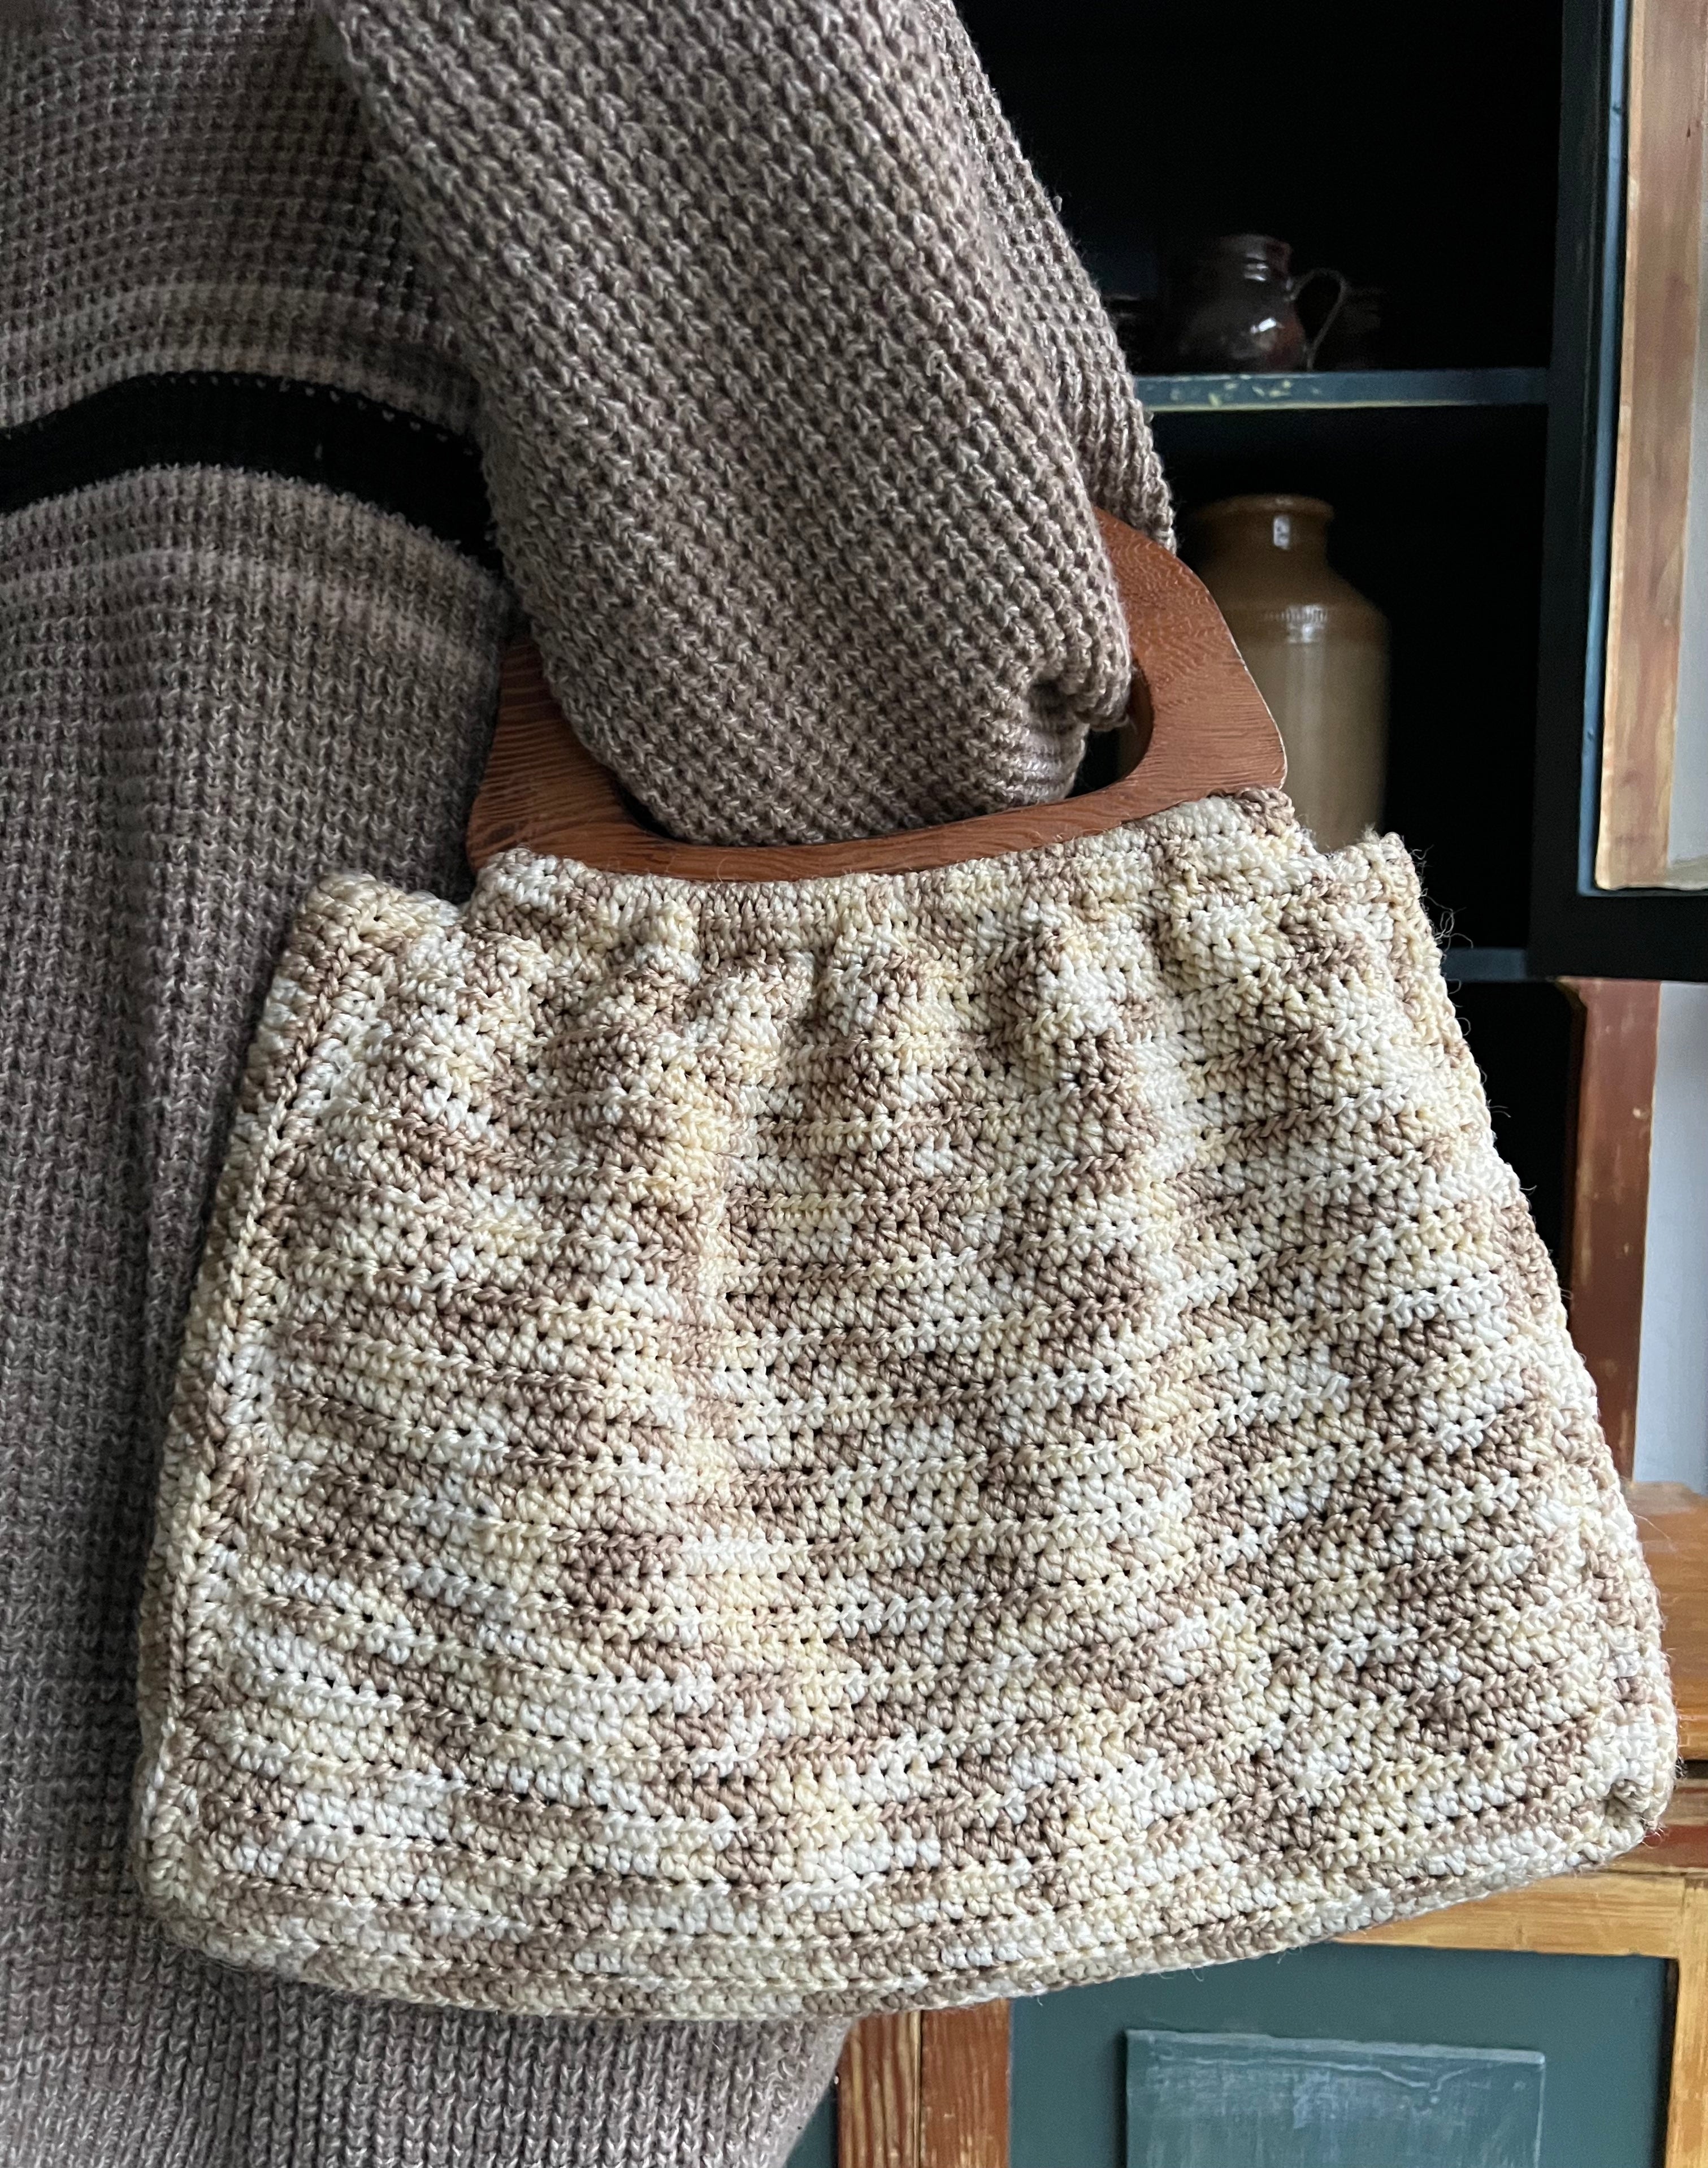 Reversible Crochet Bag